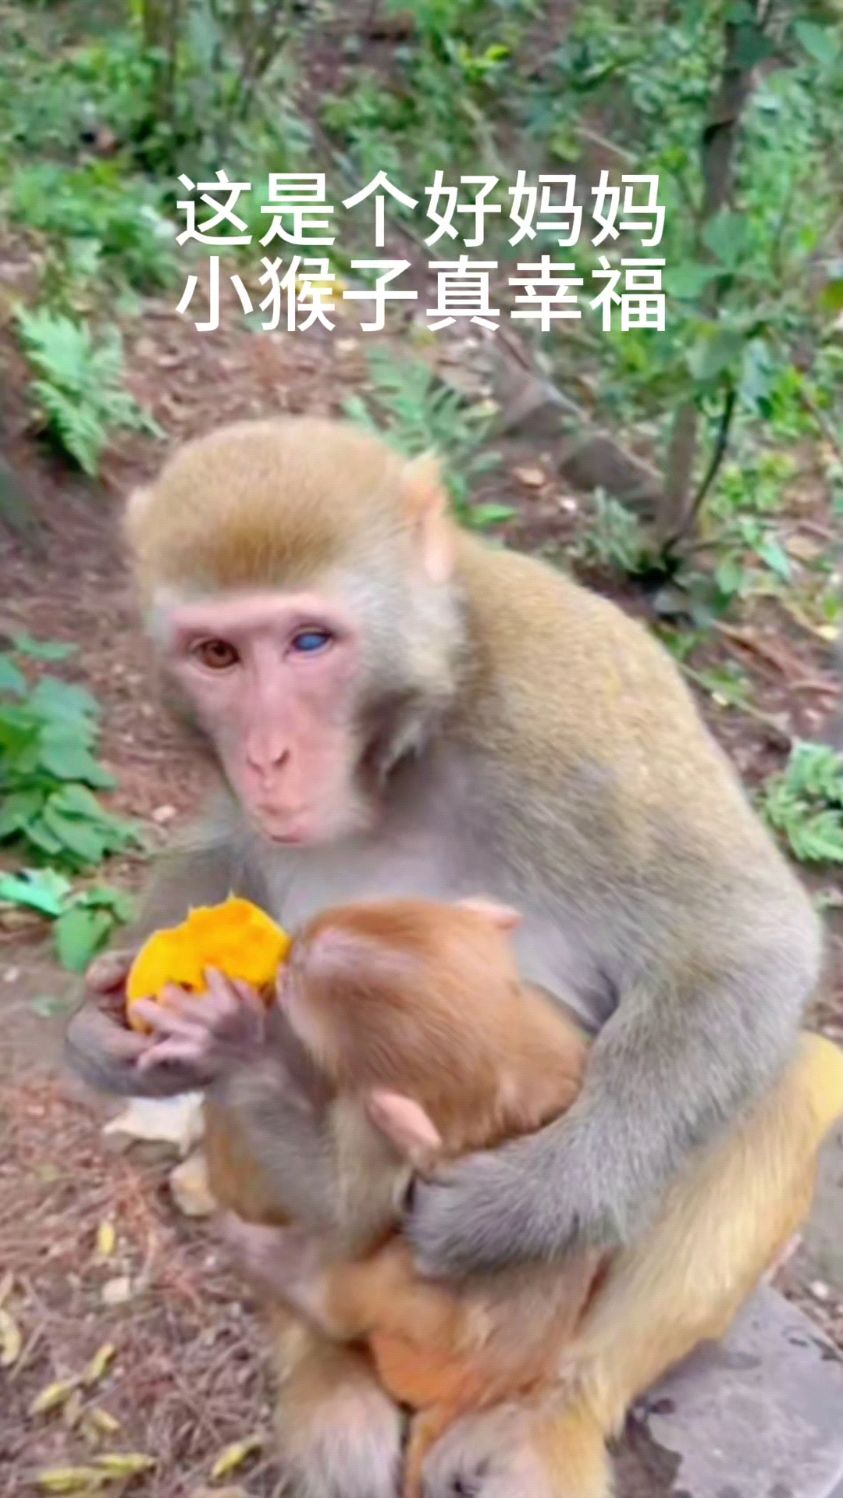 这是个好猴妈,小猴子真幸福